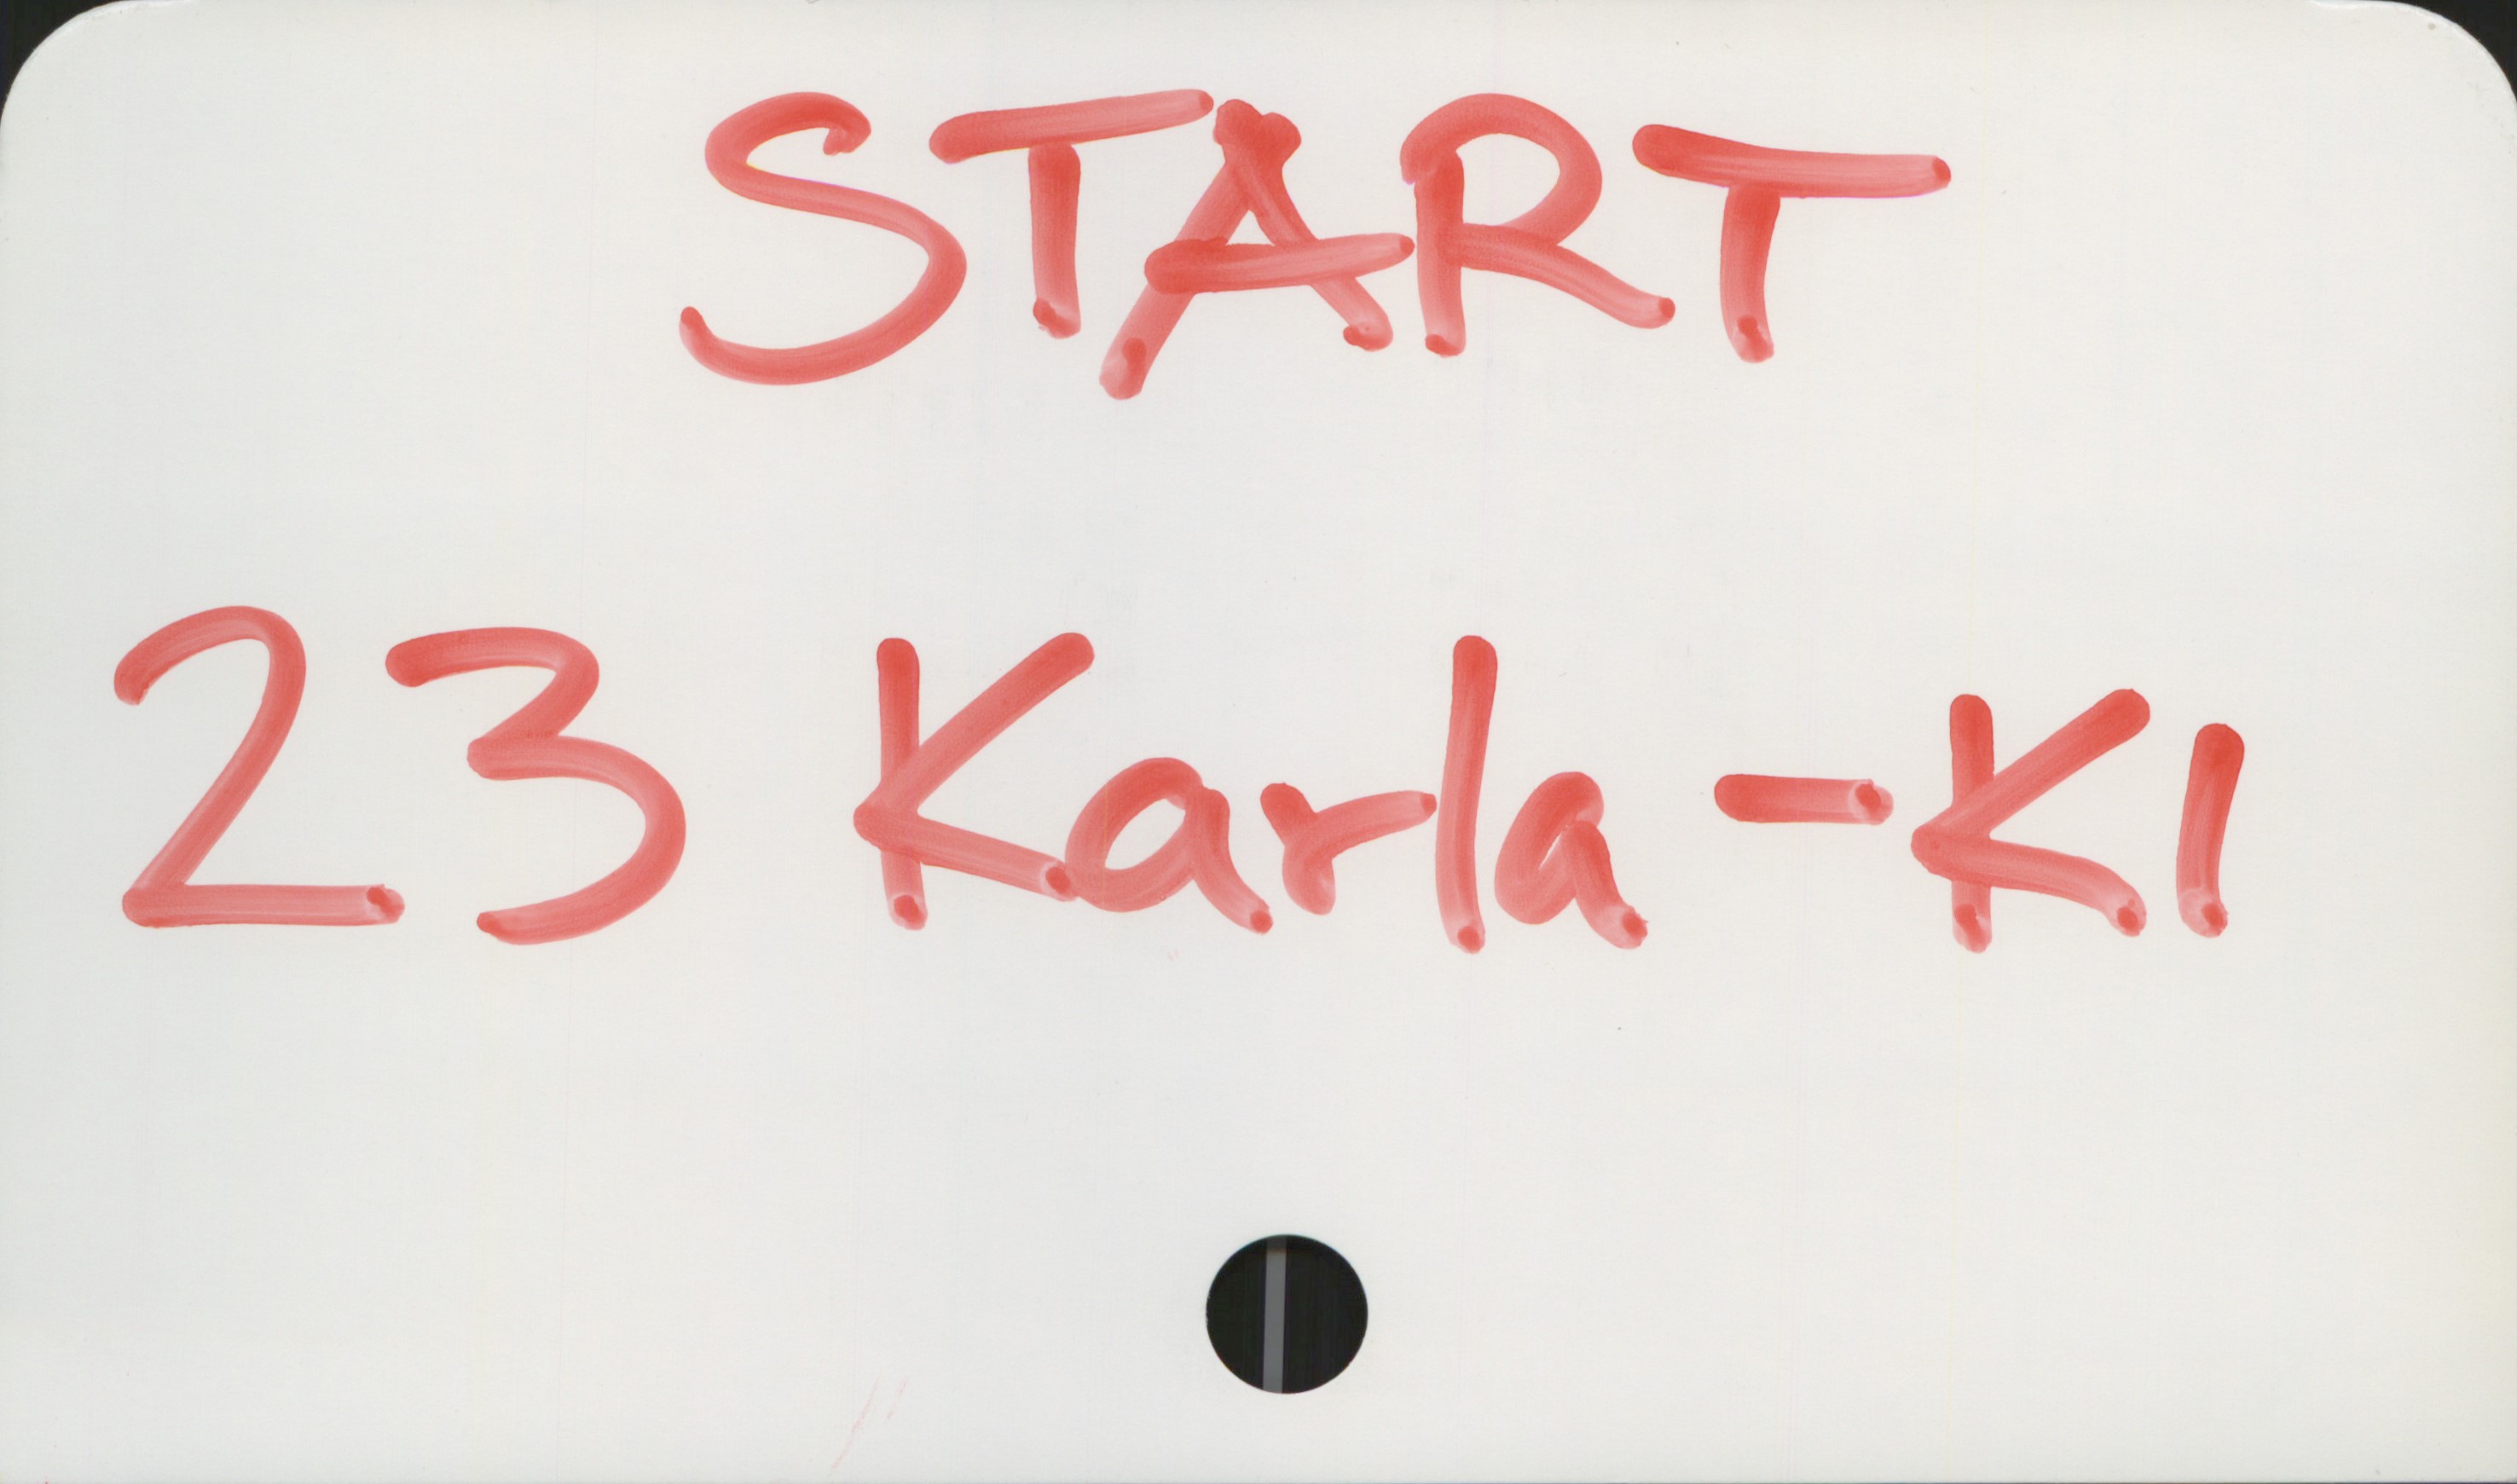  START"
2-$ Karla -E!

